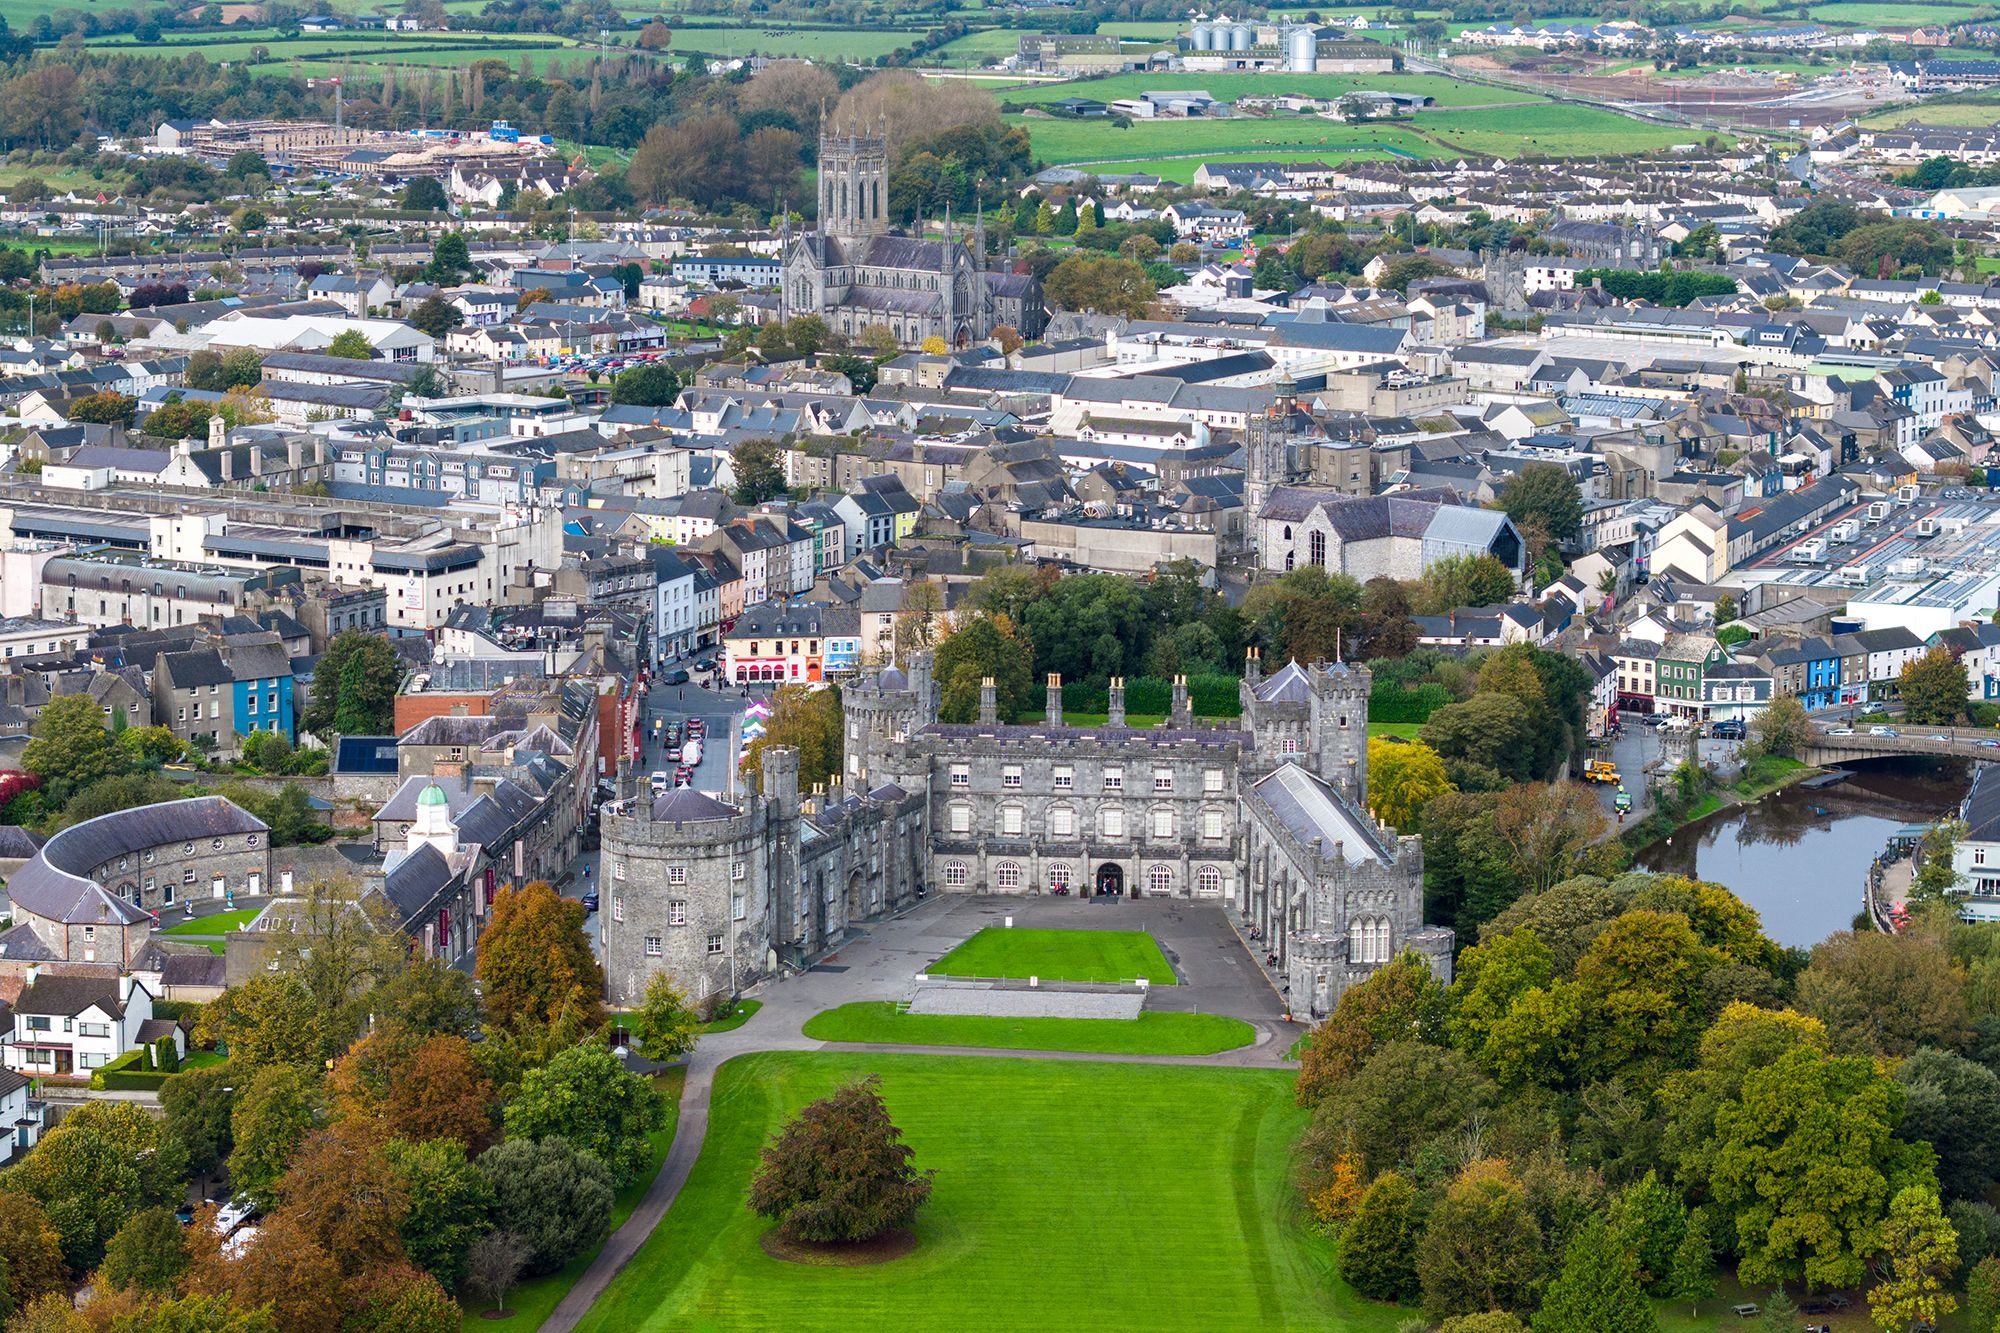 蔚为壮观的基尔肯尼城堡(Kilkenny)矗立在战略性高地上，控制着诺尔河的一处渡口，并且主宰着基尔